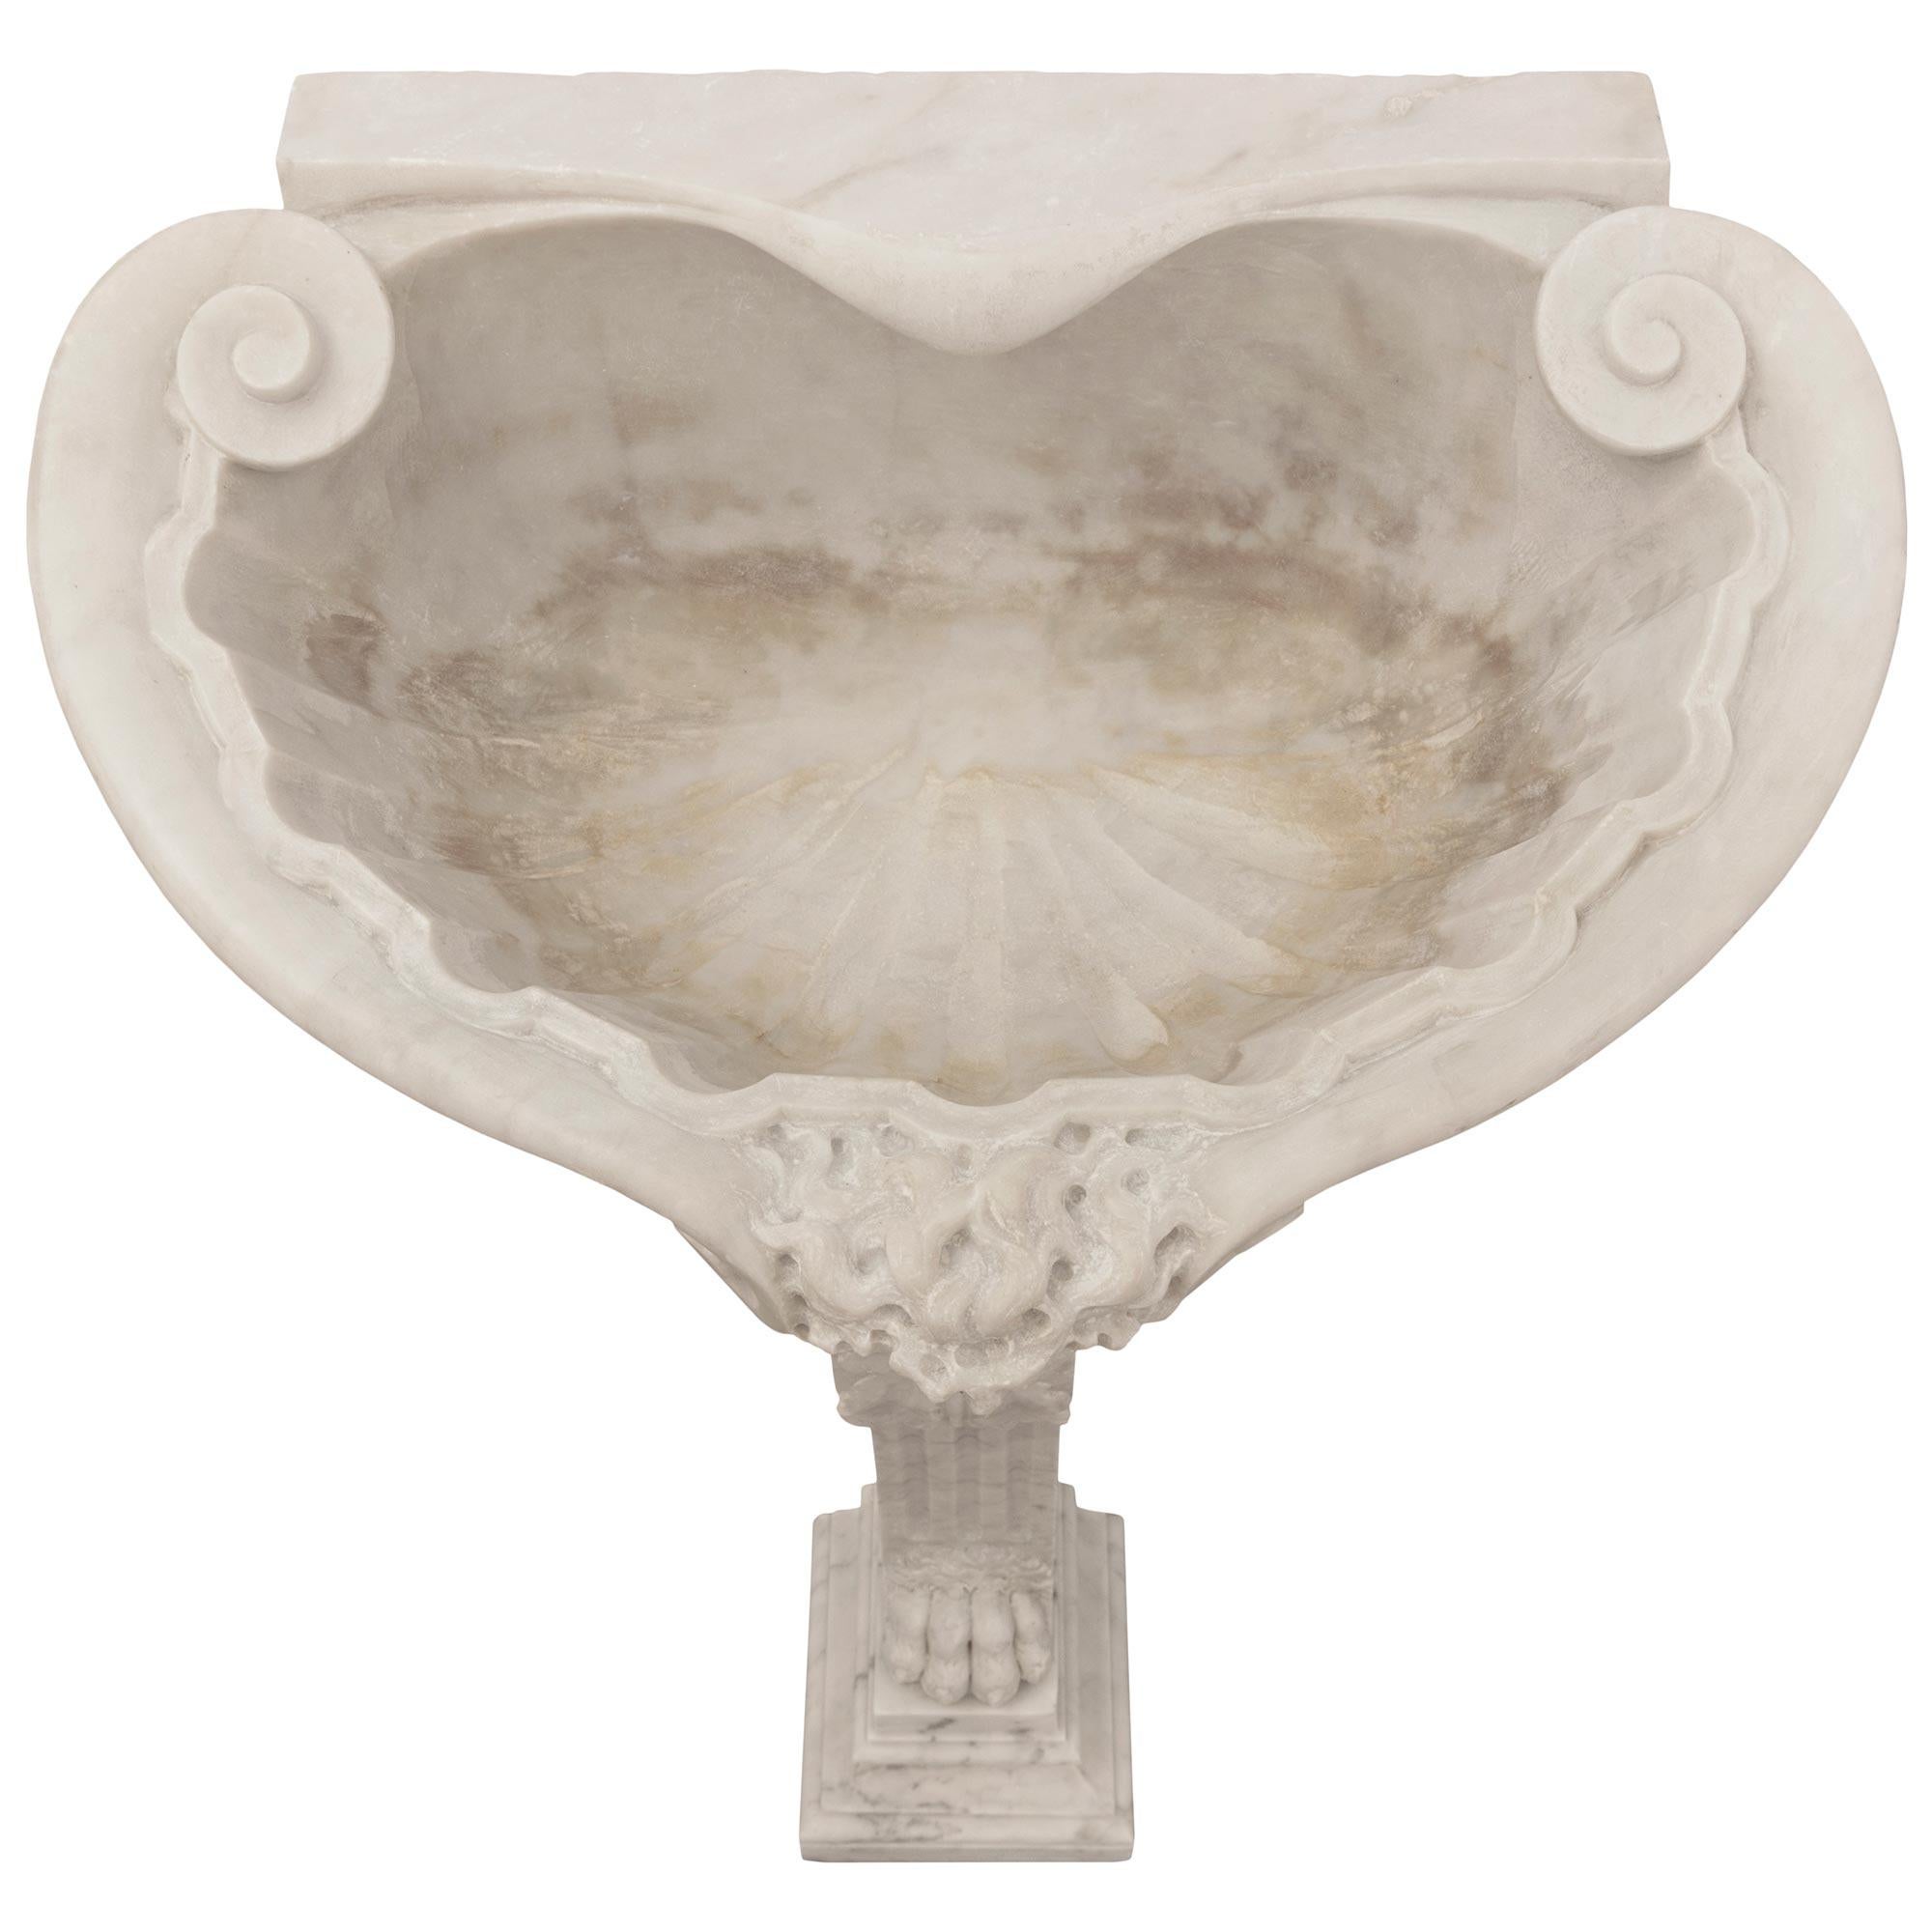 An Italian 19th century Neo-Classical st Carrara marble bird bath/sink For Sale 1